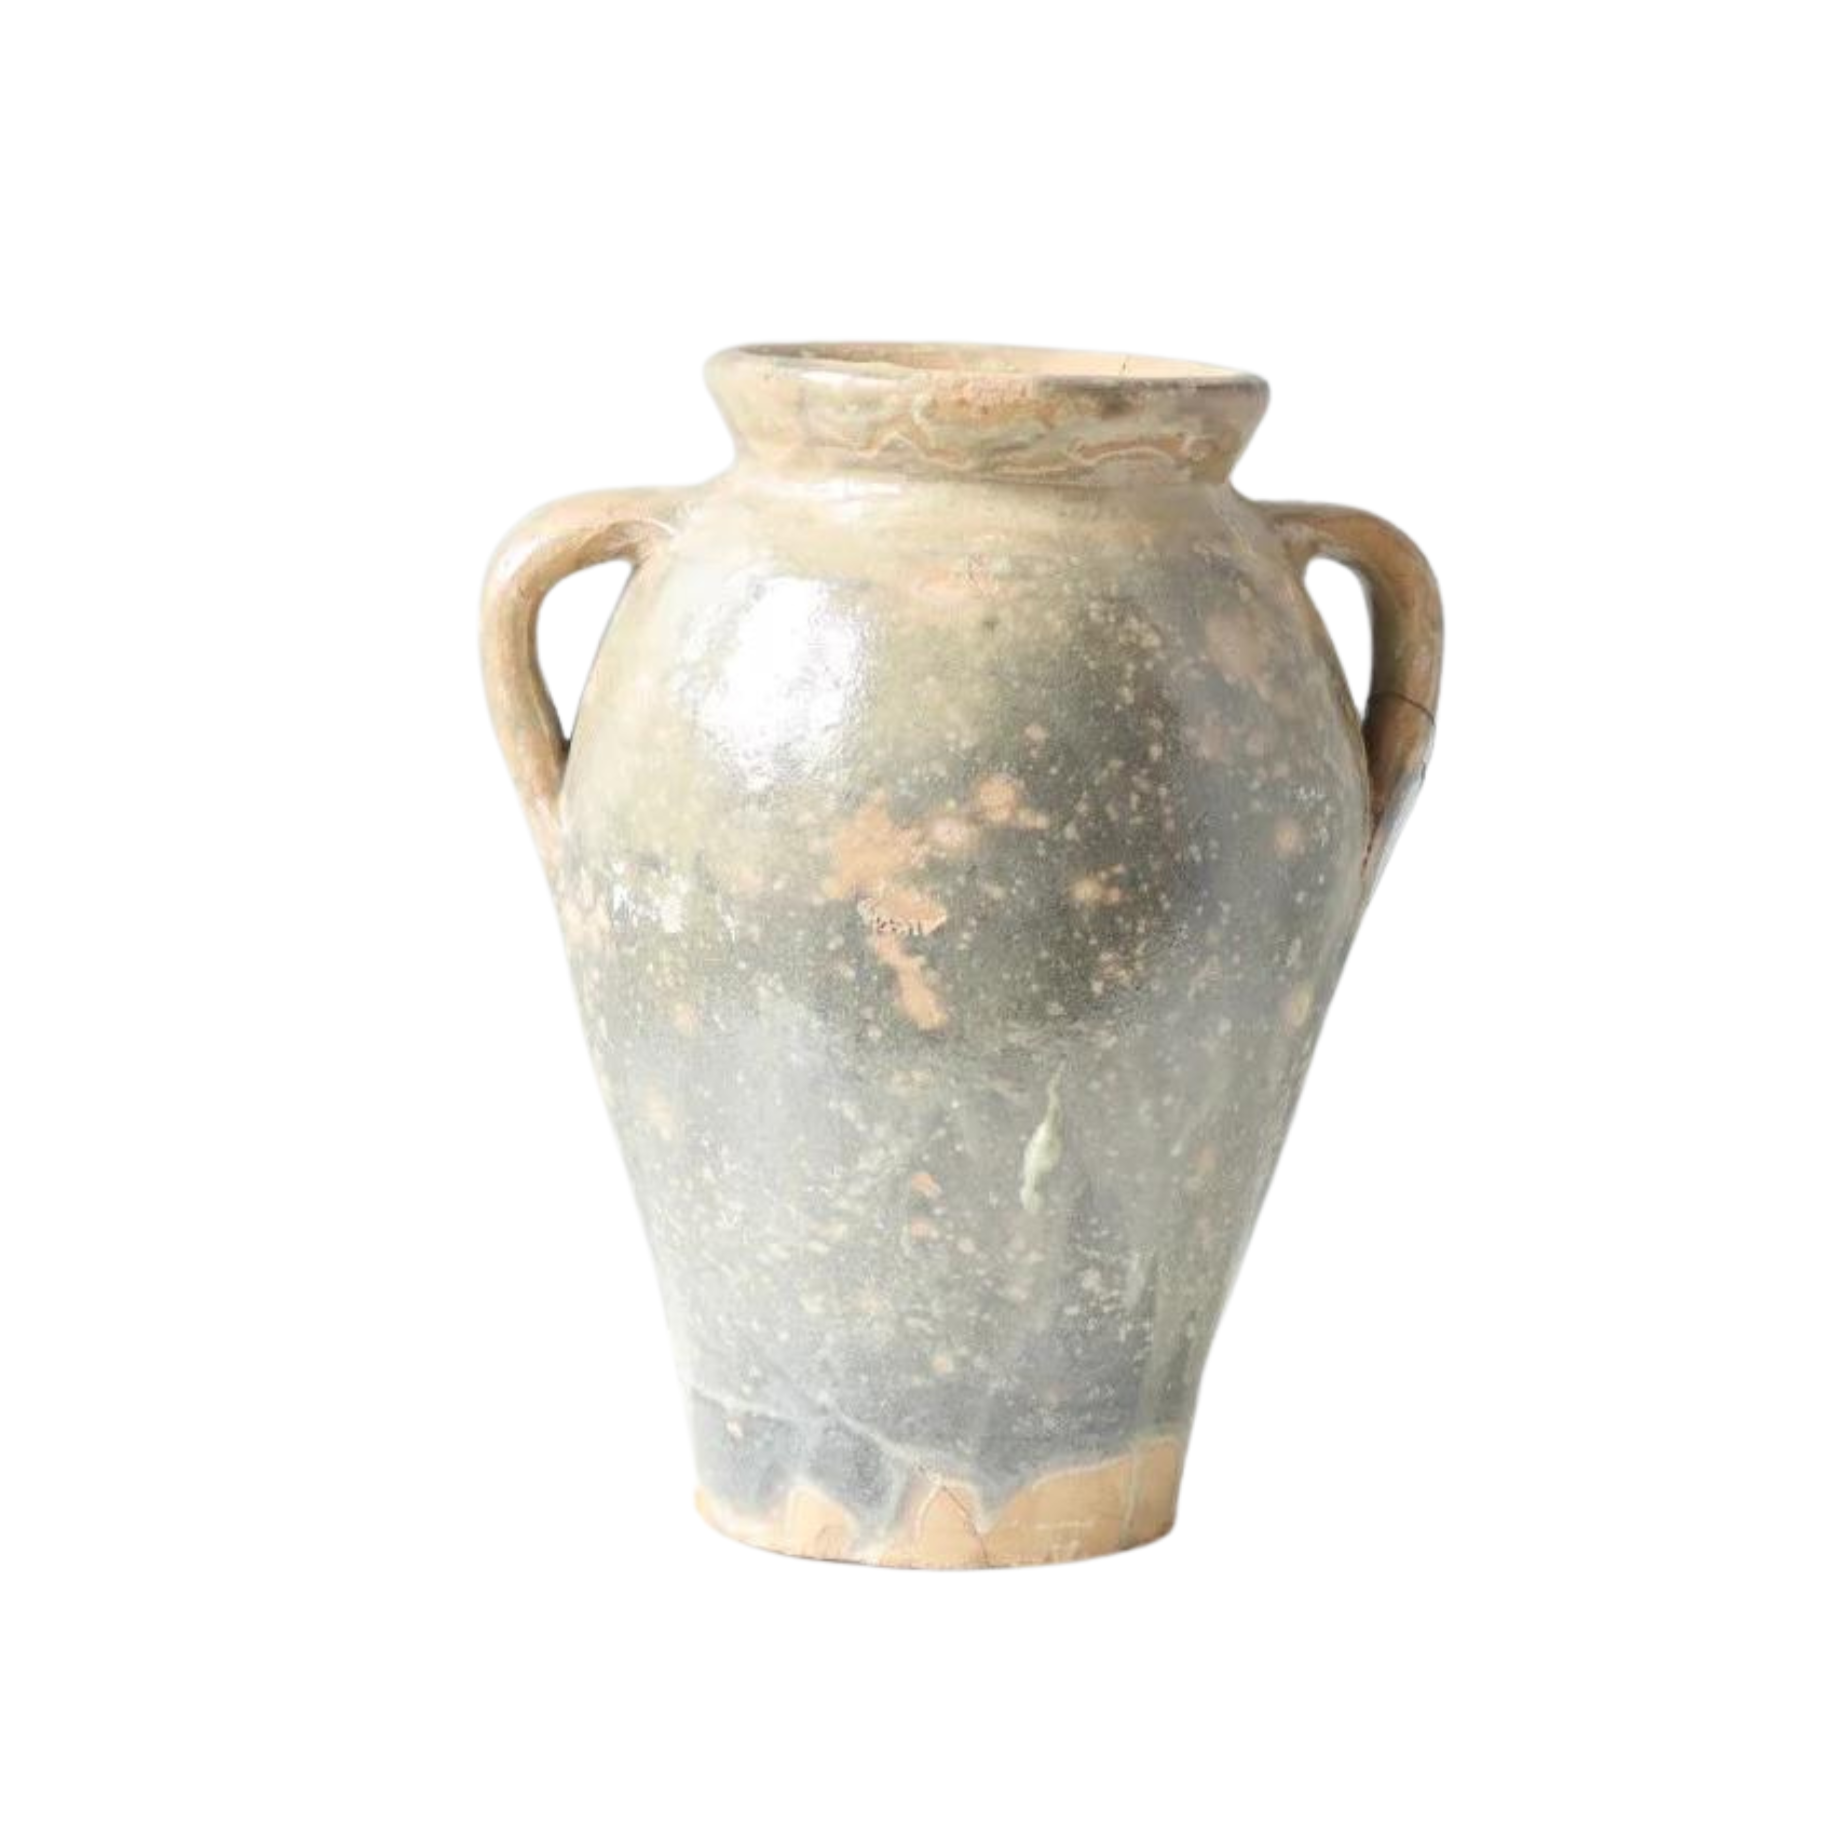 Found Amphora